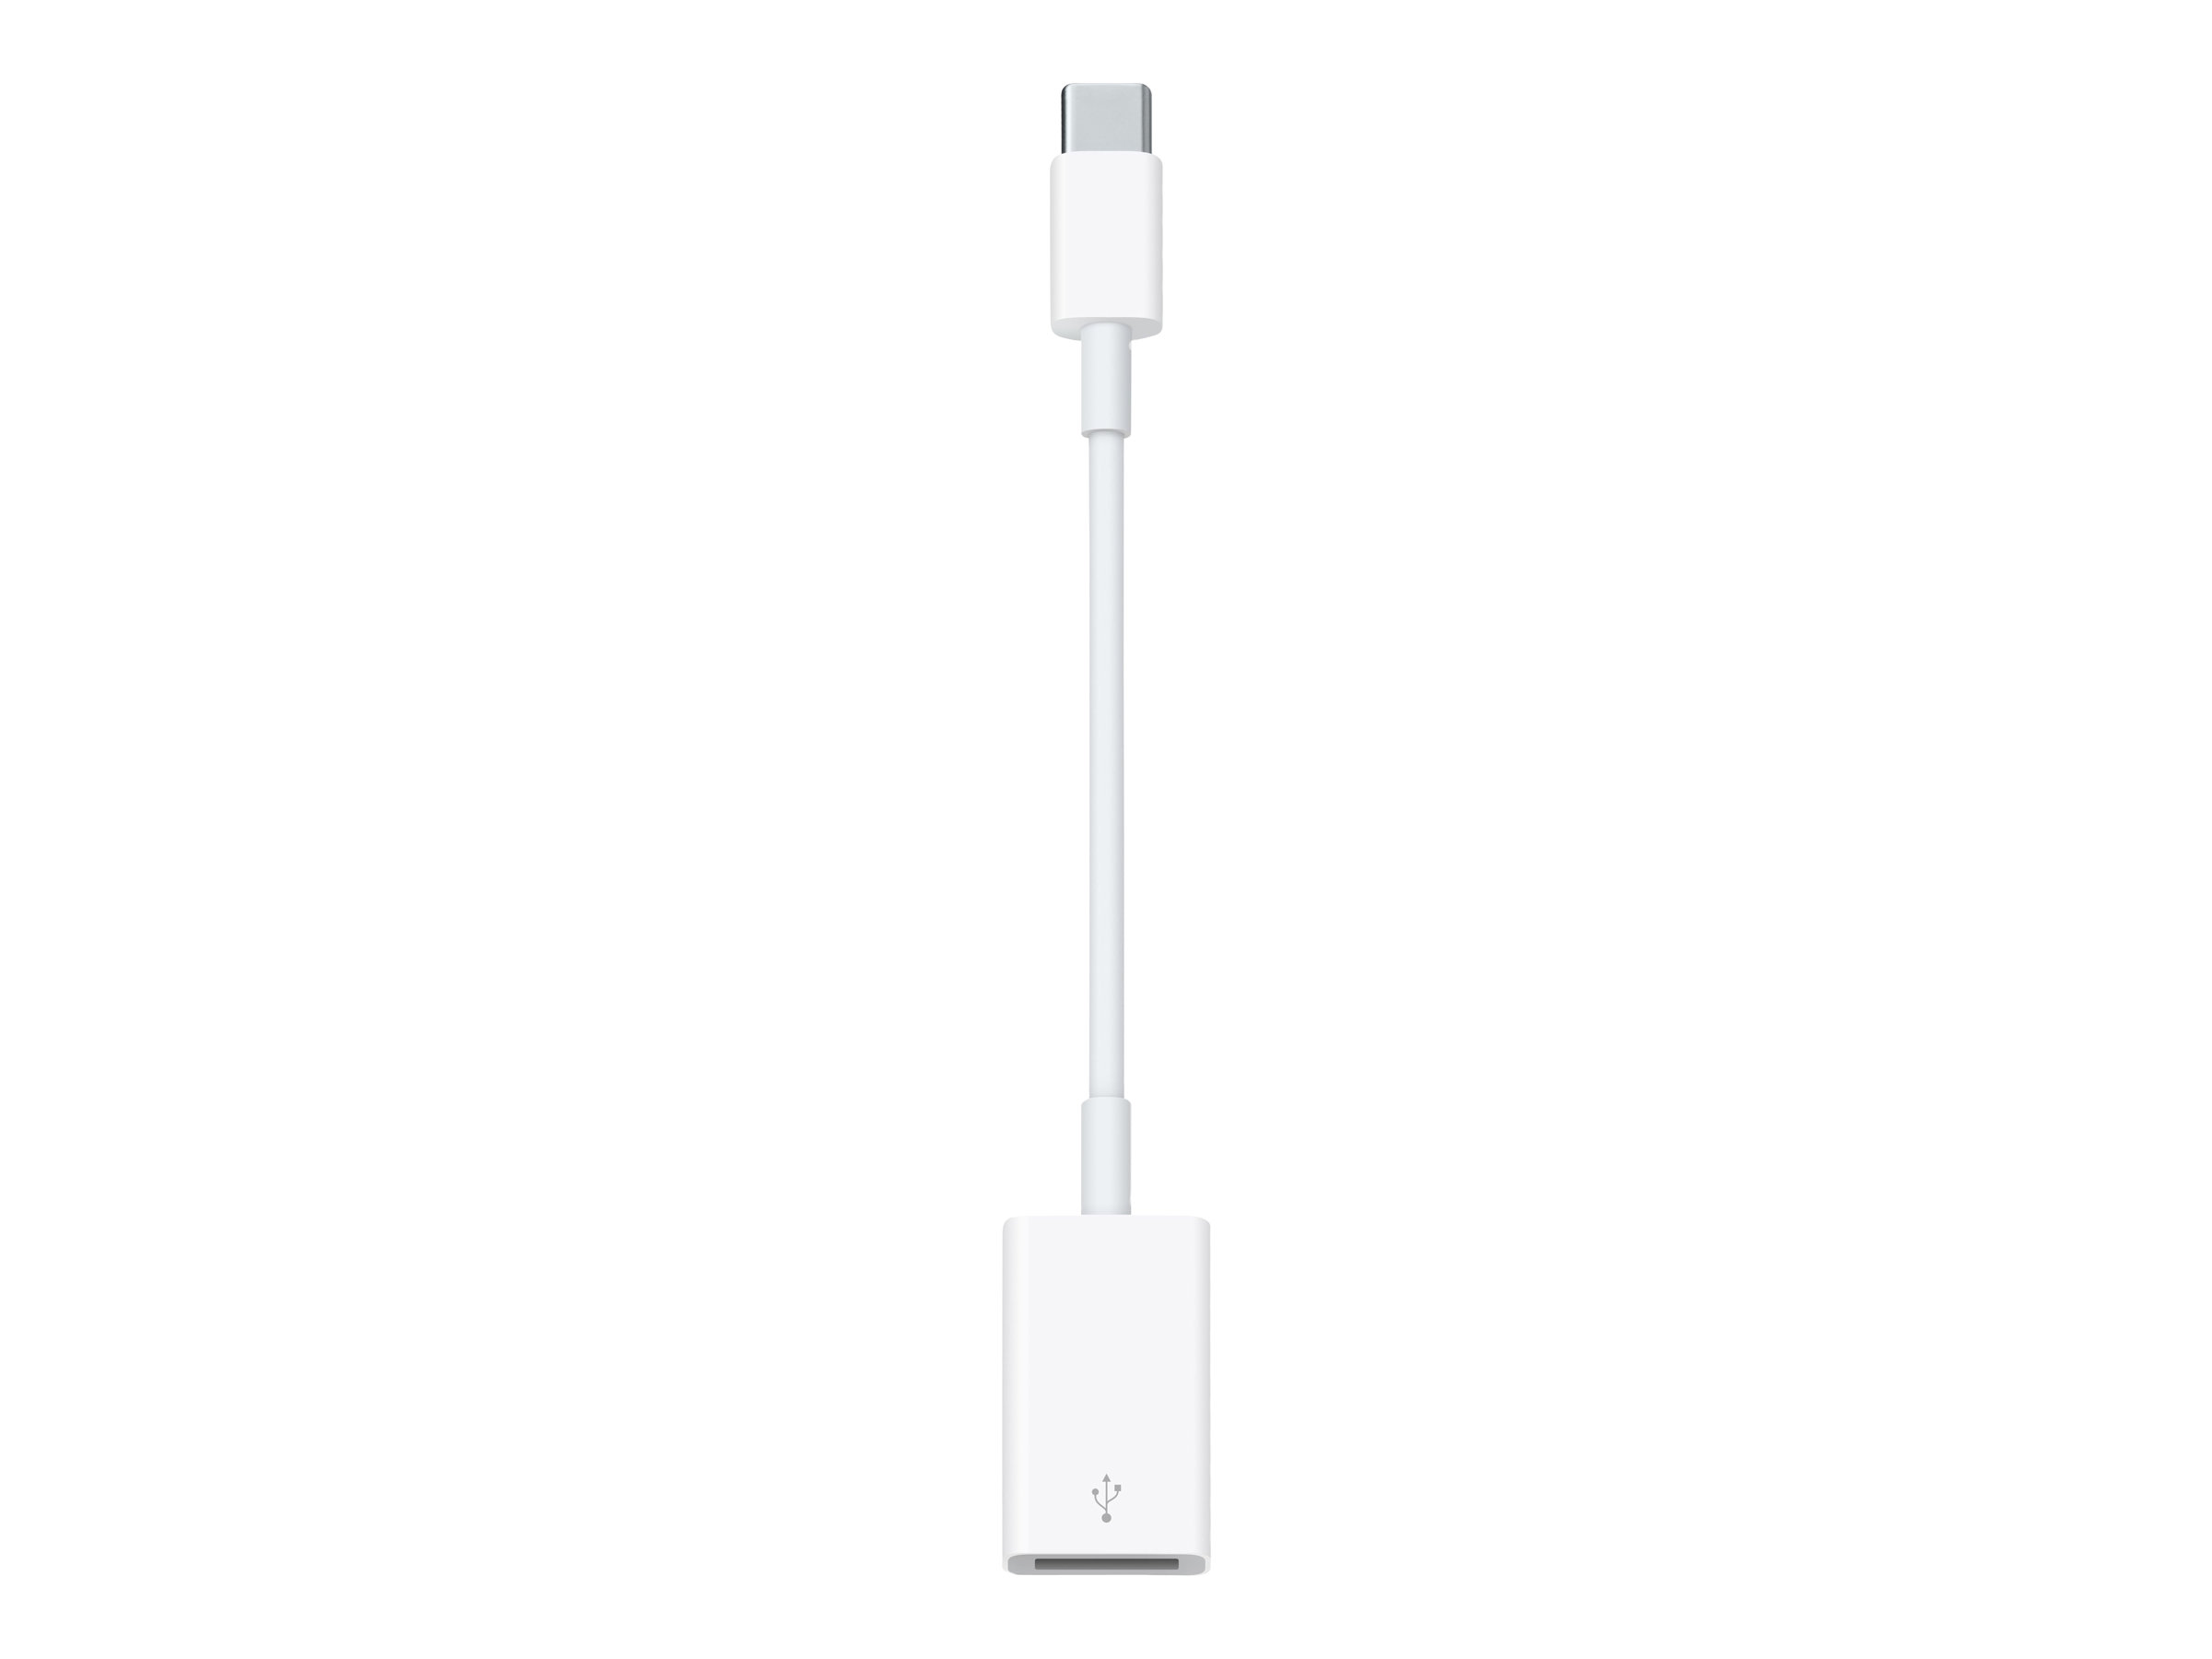 Apple USB-C to USB Adapter - USB-Adapter - USB Typ A (W) zu 24 pin USB-C (M)